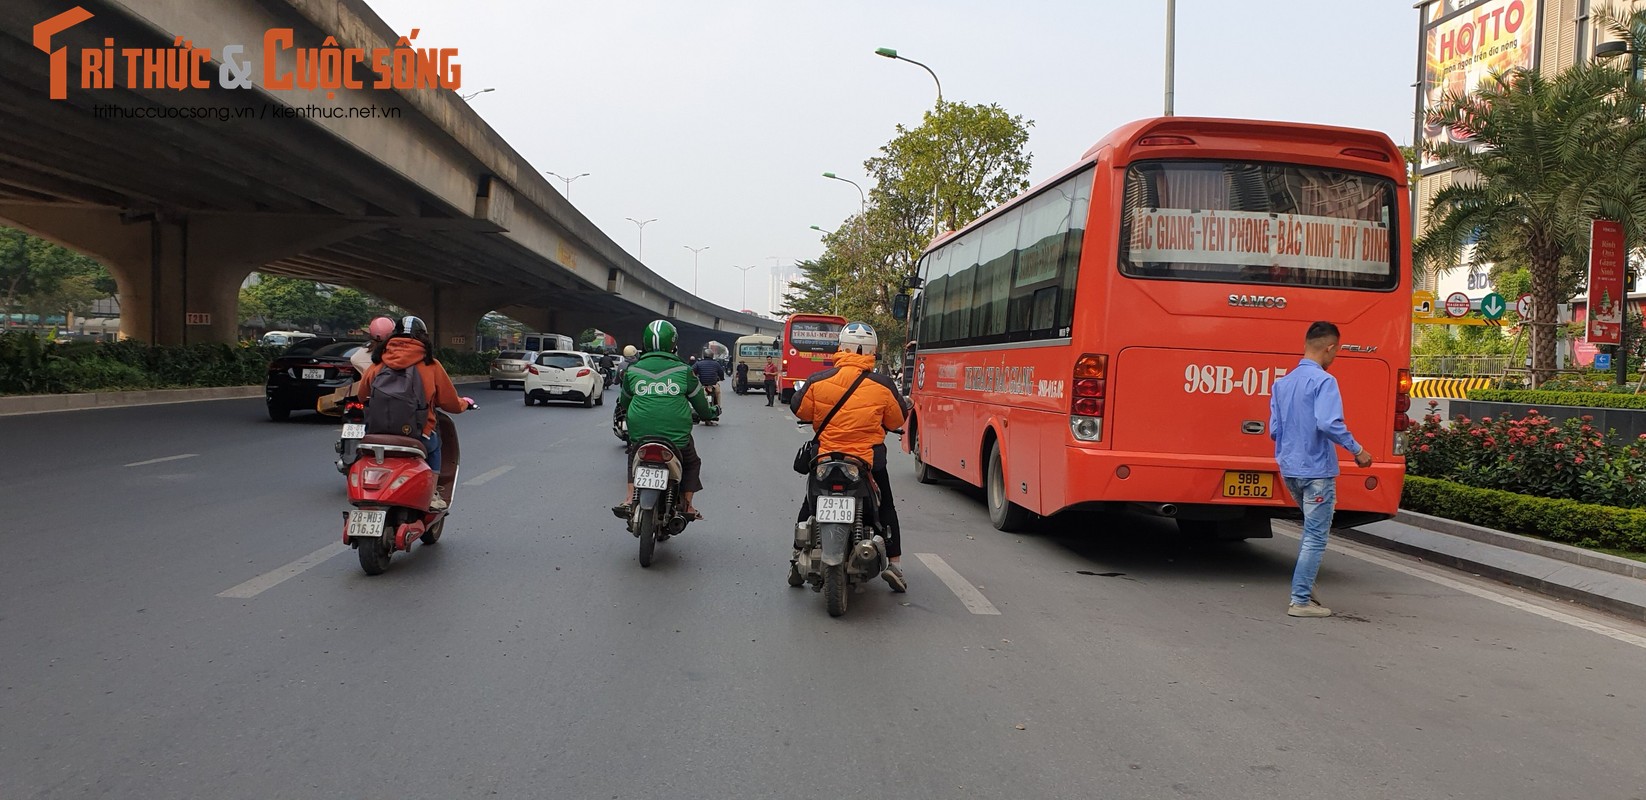 Thay CSGT, hang loat xe khach bo chay tui bui tren pho Ha Noi-Hinh-5